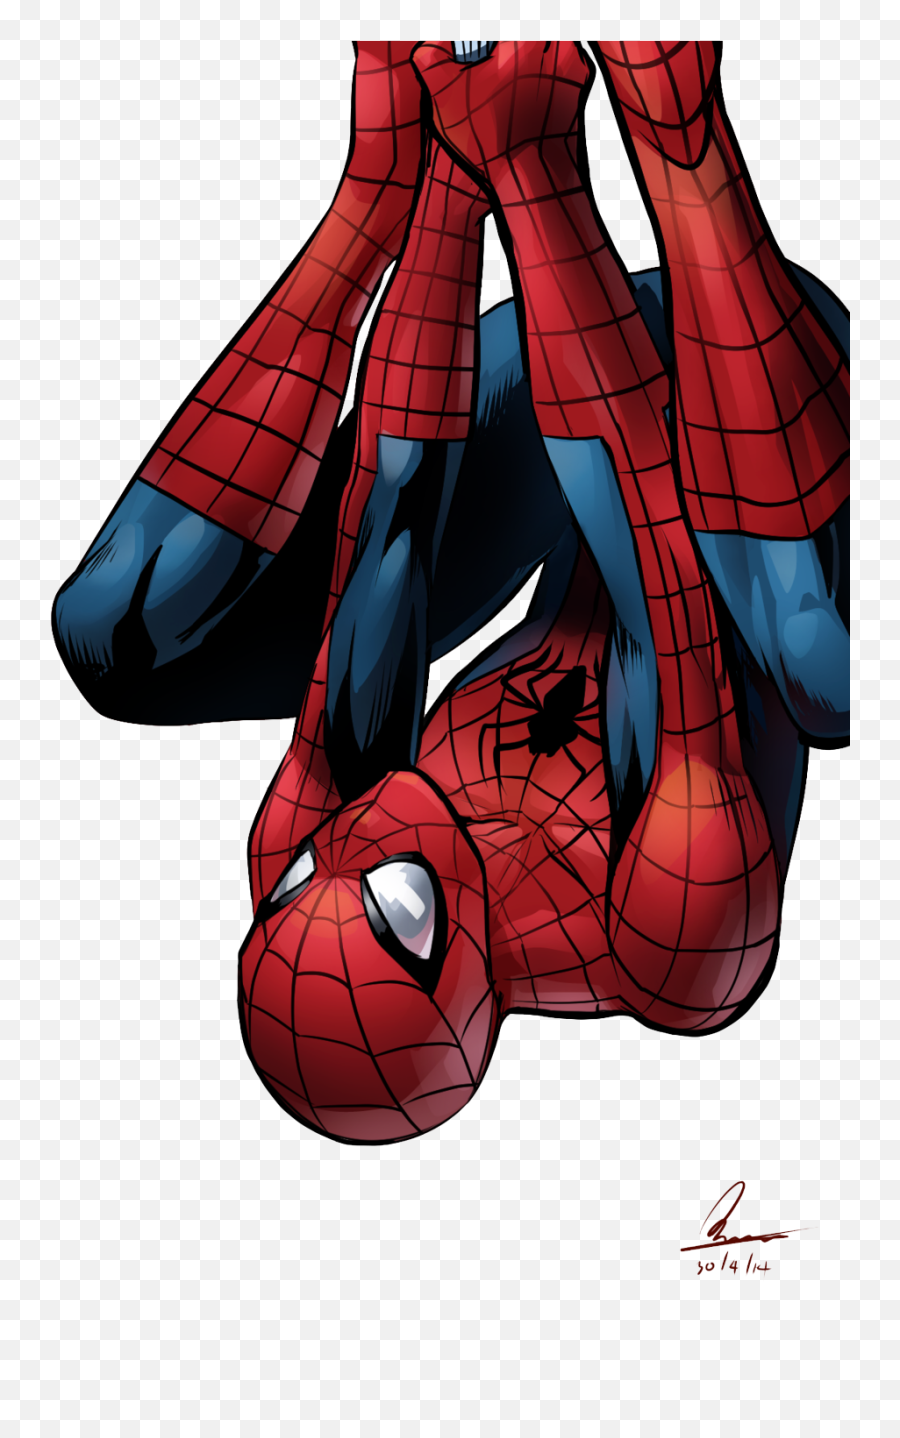 Kisspng - Amazing Spider Man 2 Fan Art Emoji,Kiss Png